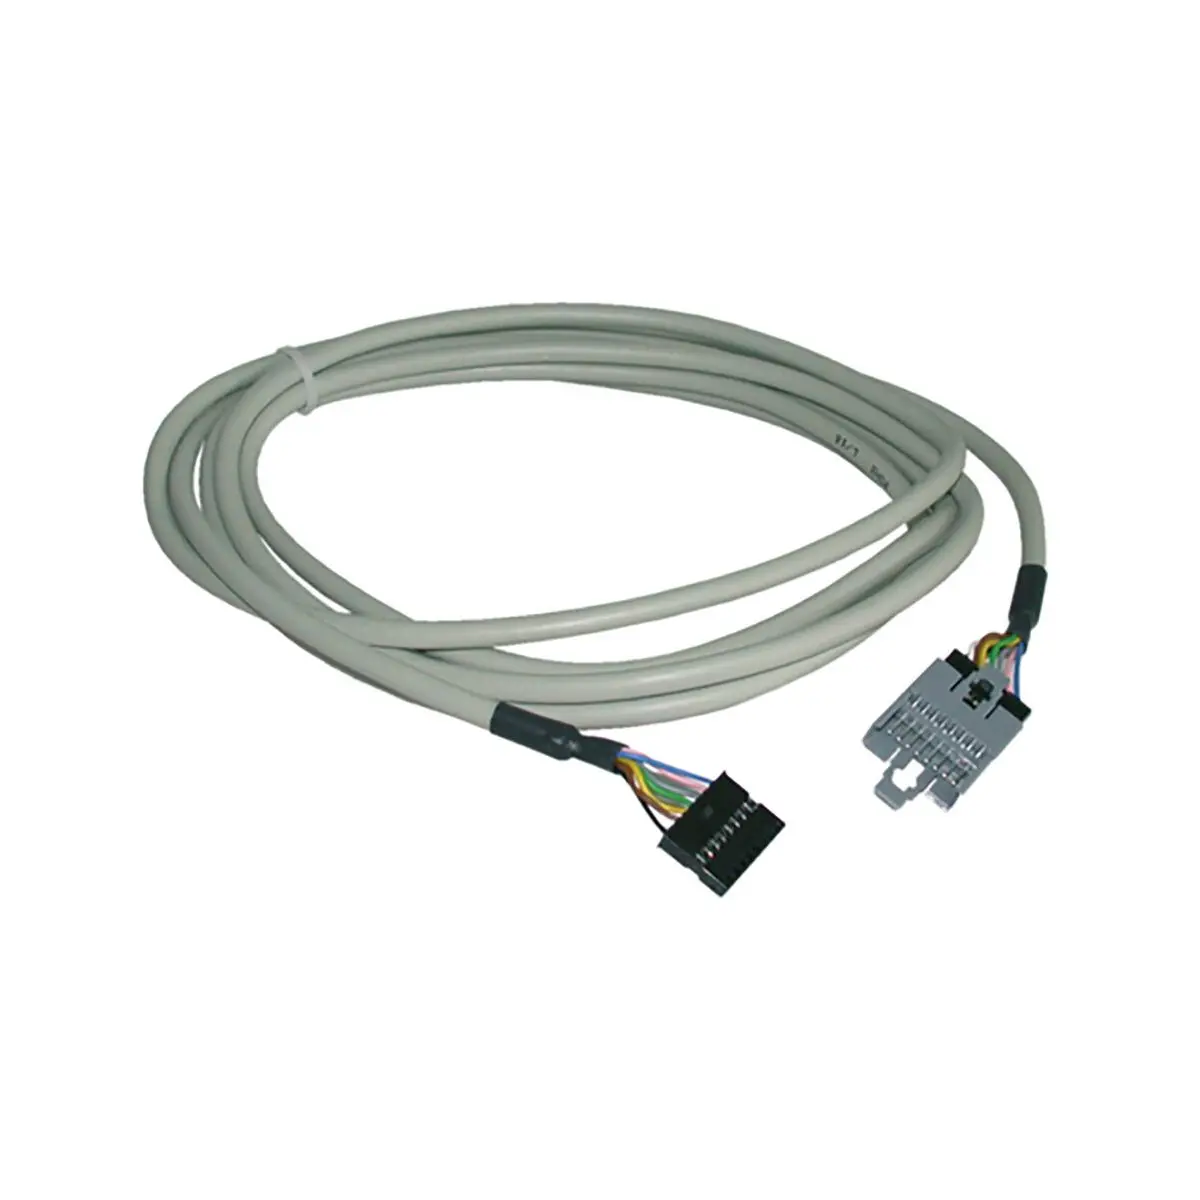 Cablu prelungitor de 3 m pentru receptoare IR pentru sistemele de aer condiționat Saphir compact, Saphir comfort RC și Saphir vario